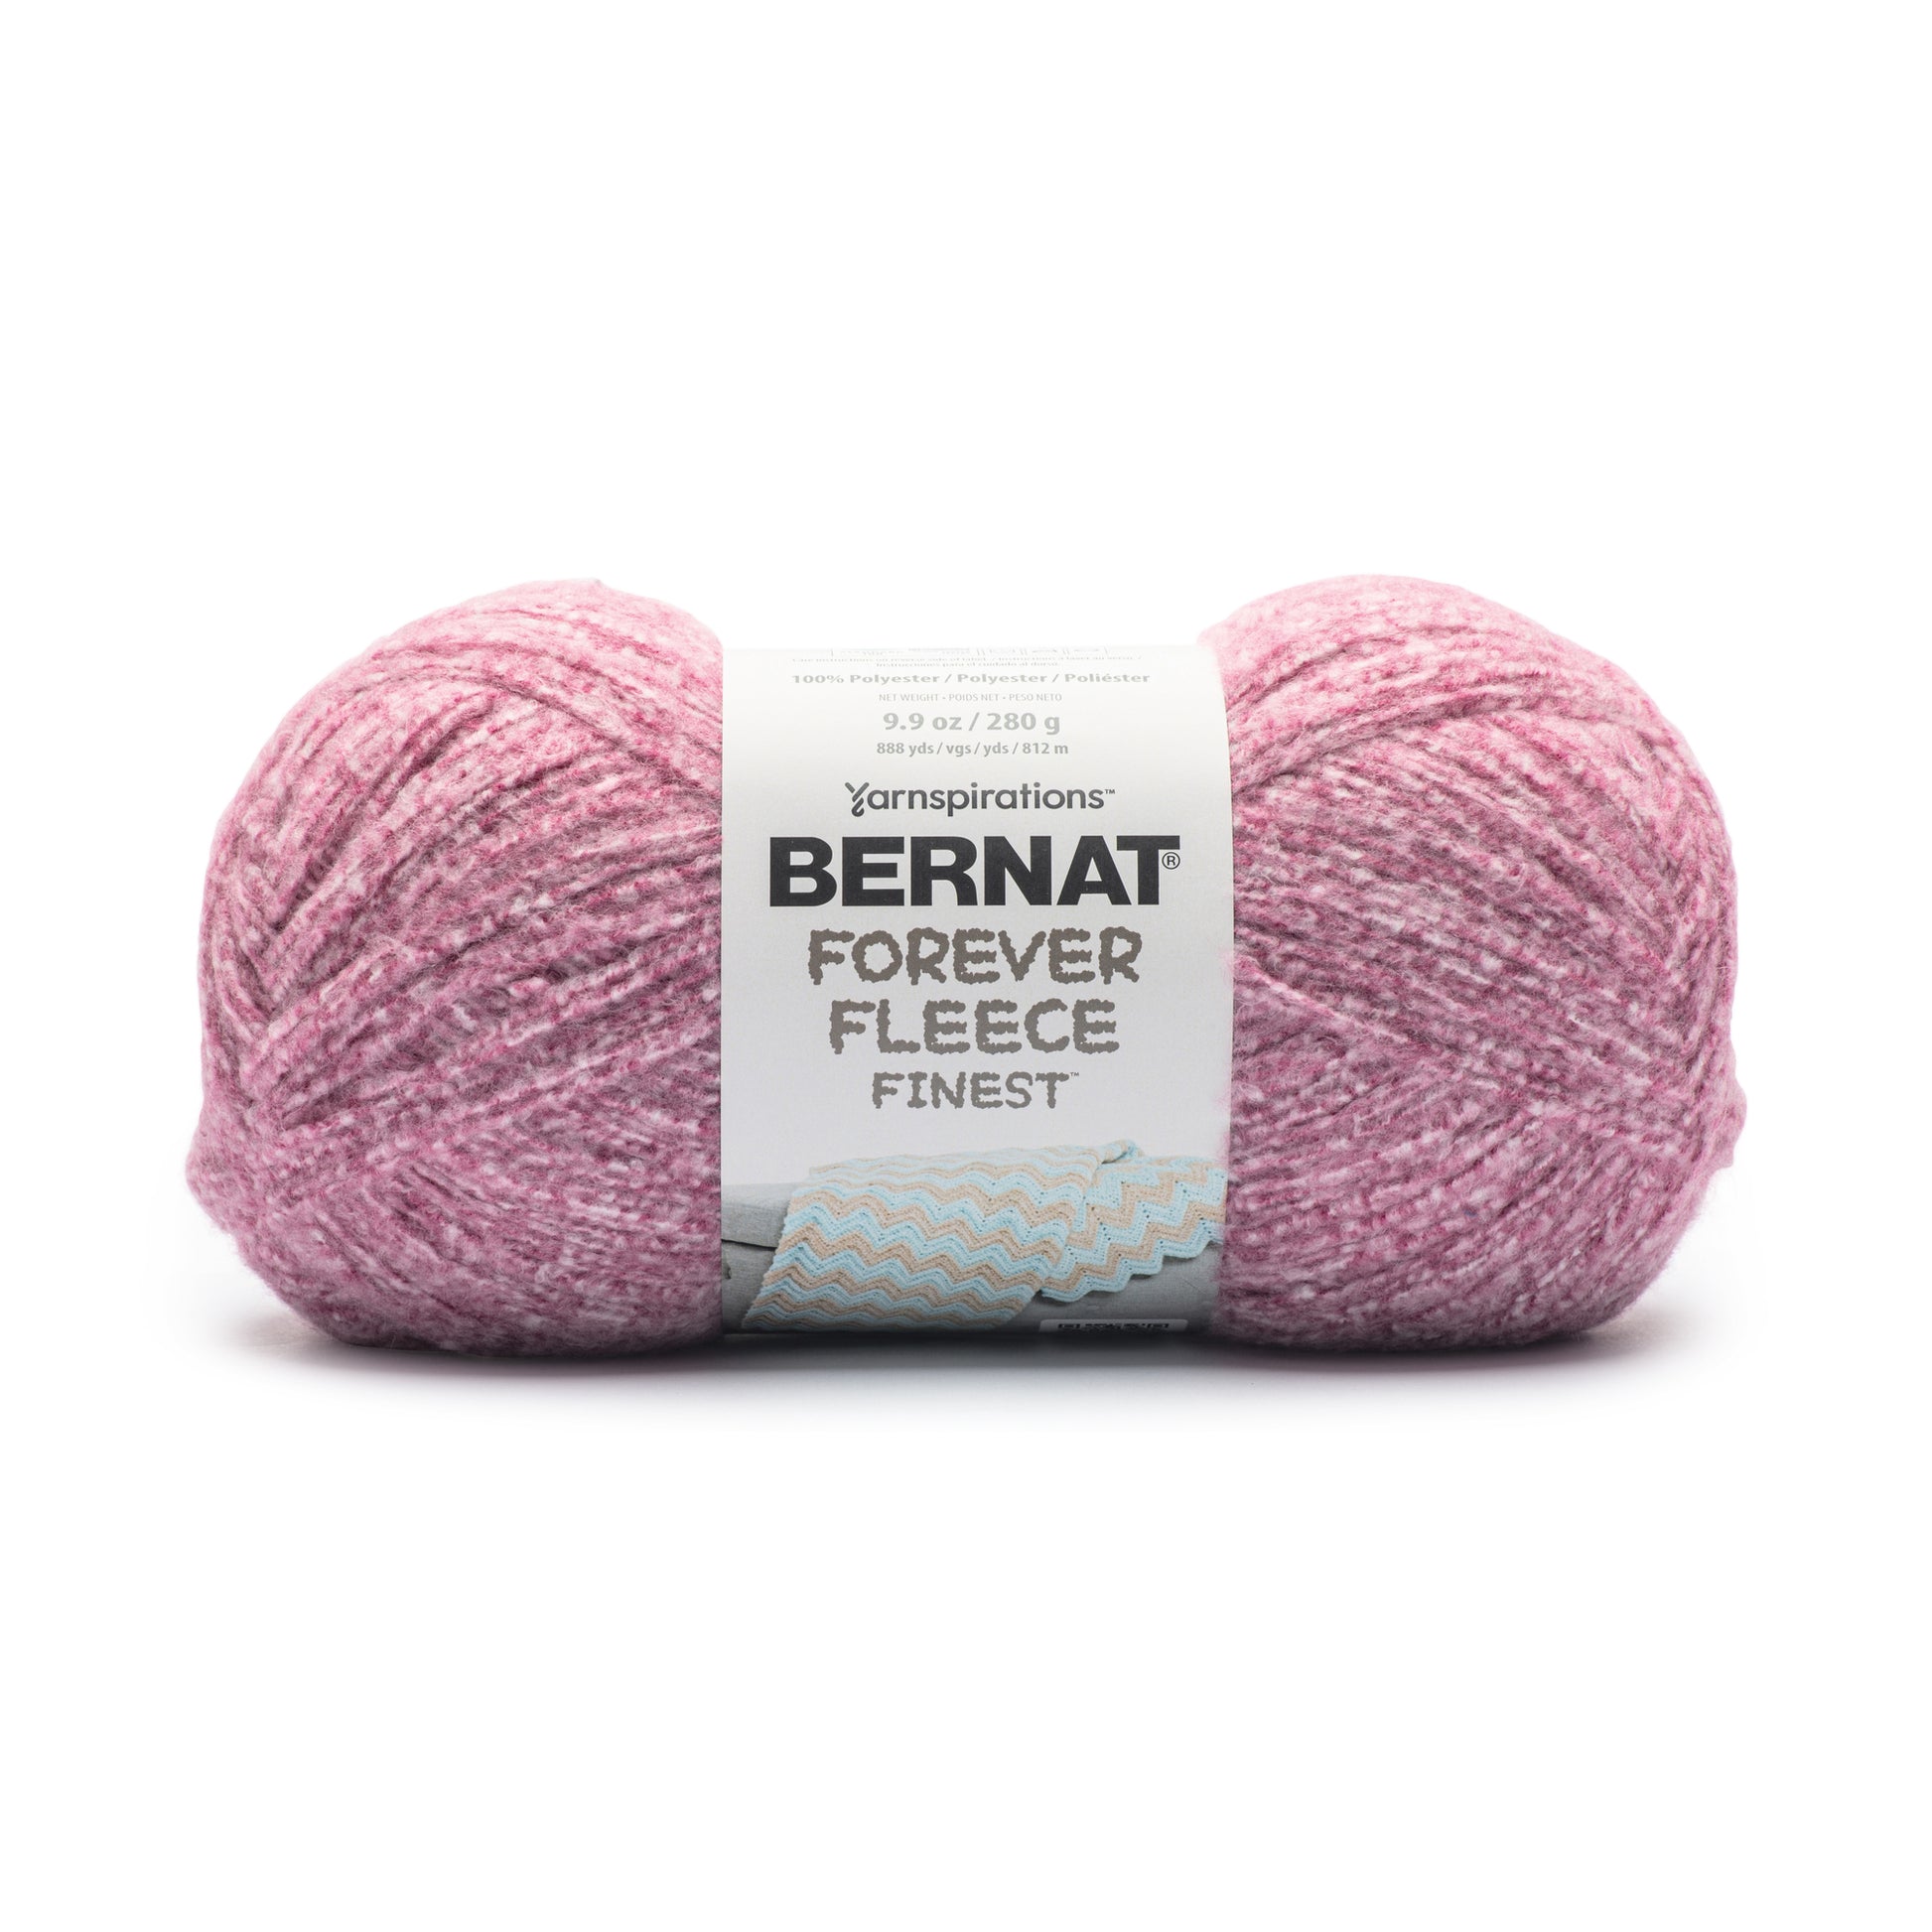 Bernat Forever Fleece Finest Yarn (280g/9.9oz)